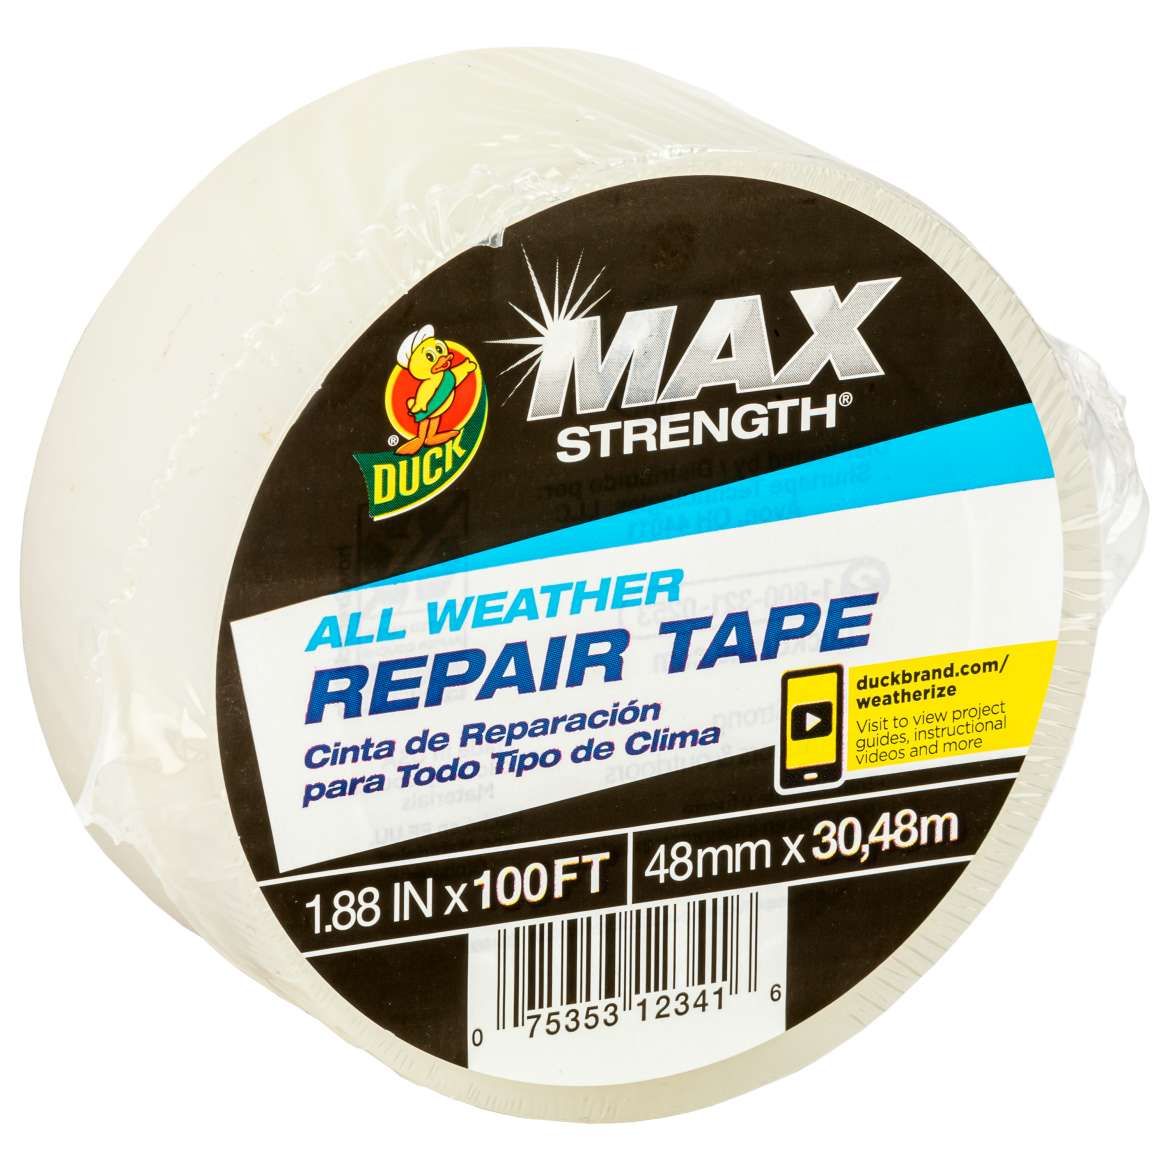 All Weather Repair Tape